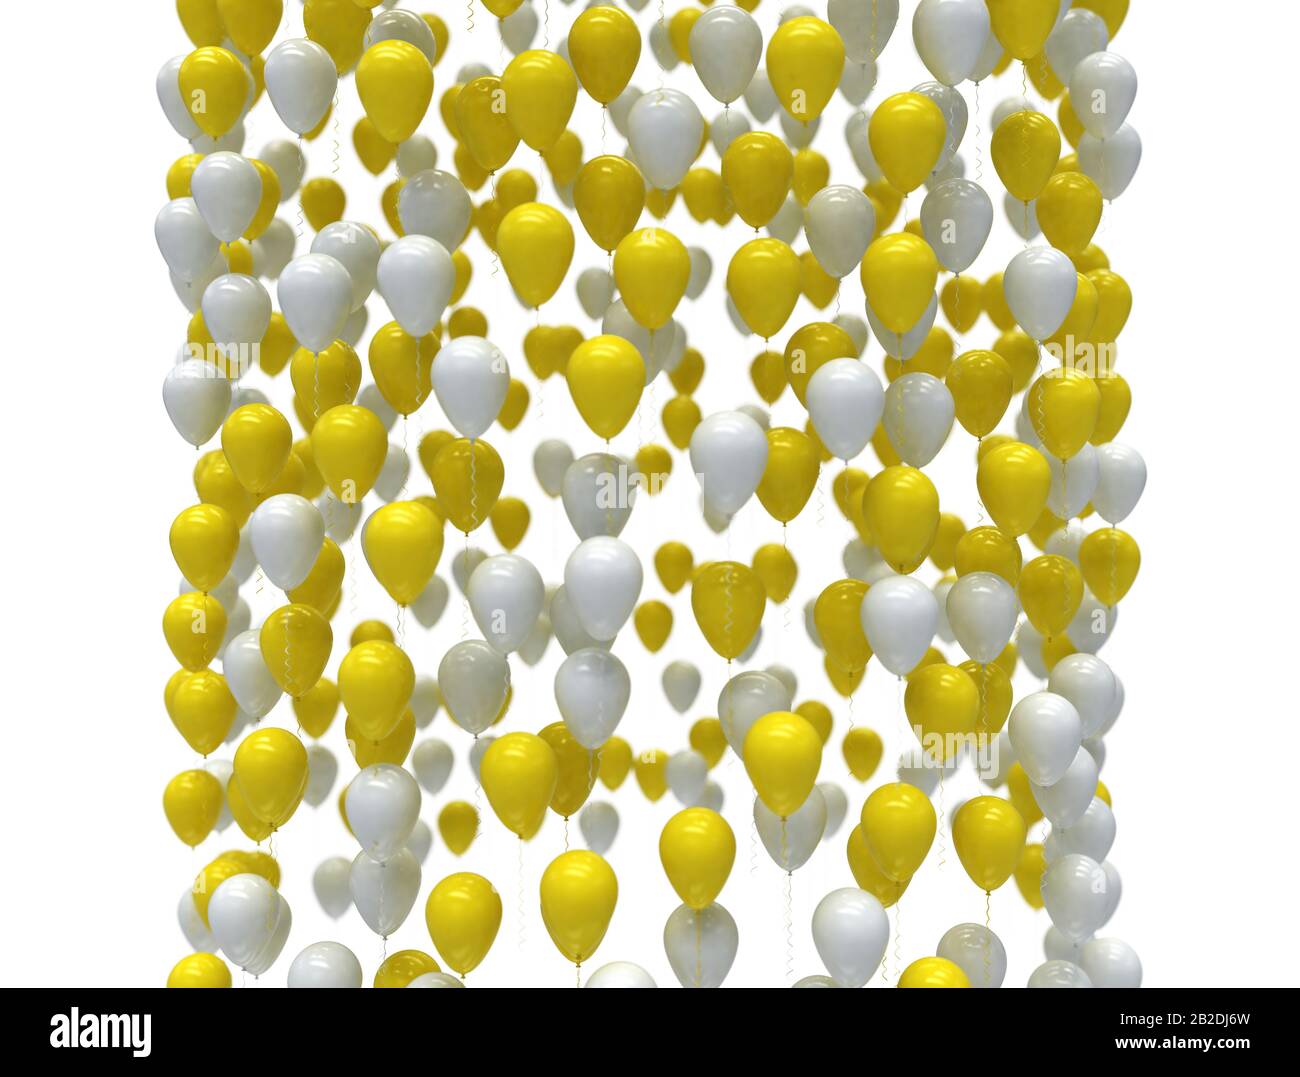 Weiße und gelbe Festballons Hintergrund, isoliert. 3D-Rendering Stockfoto